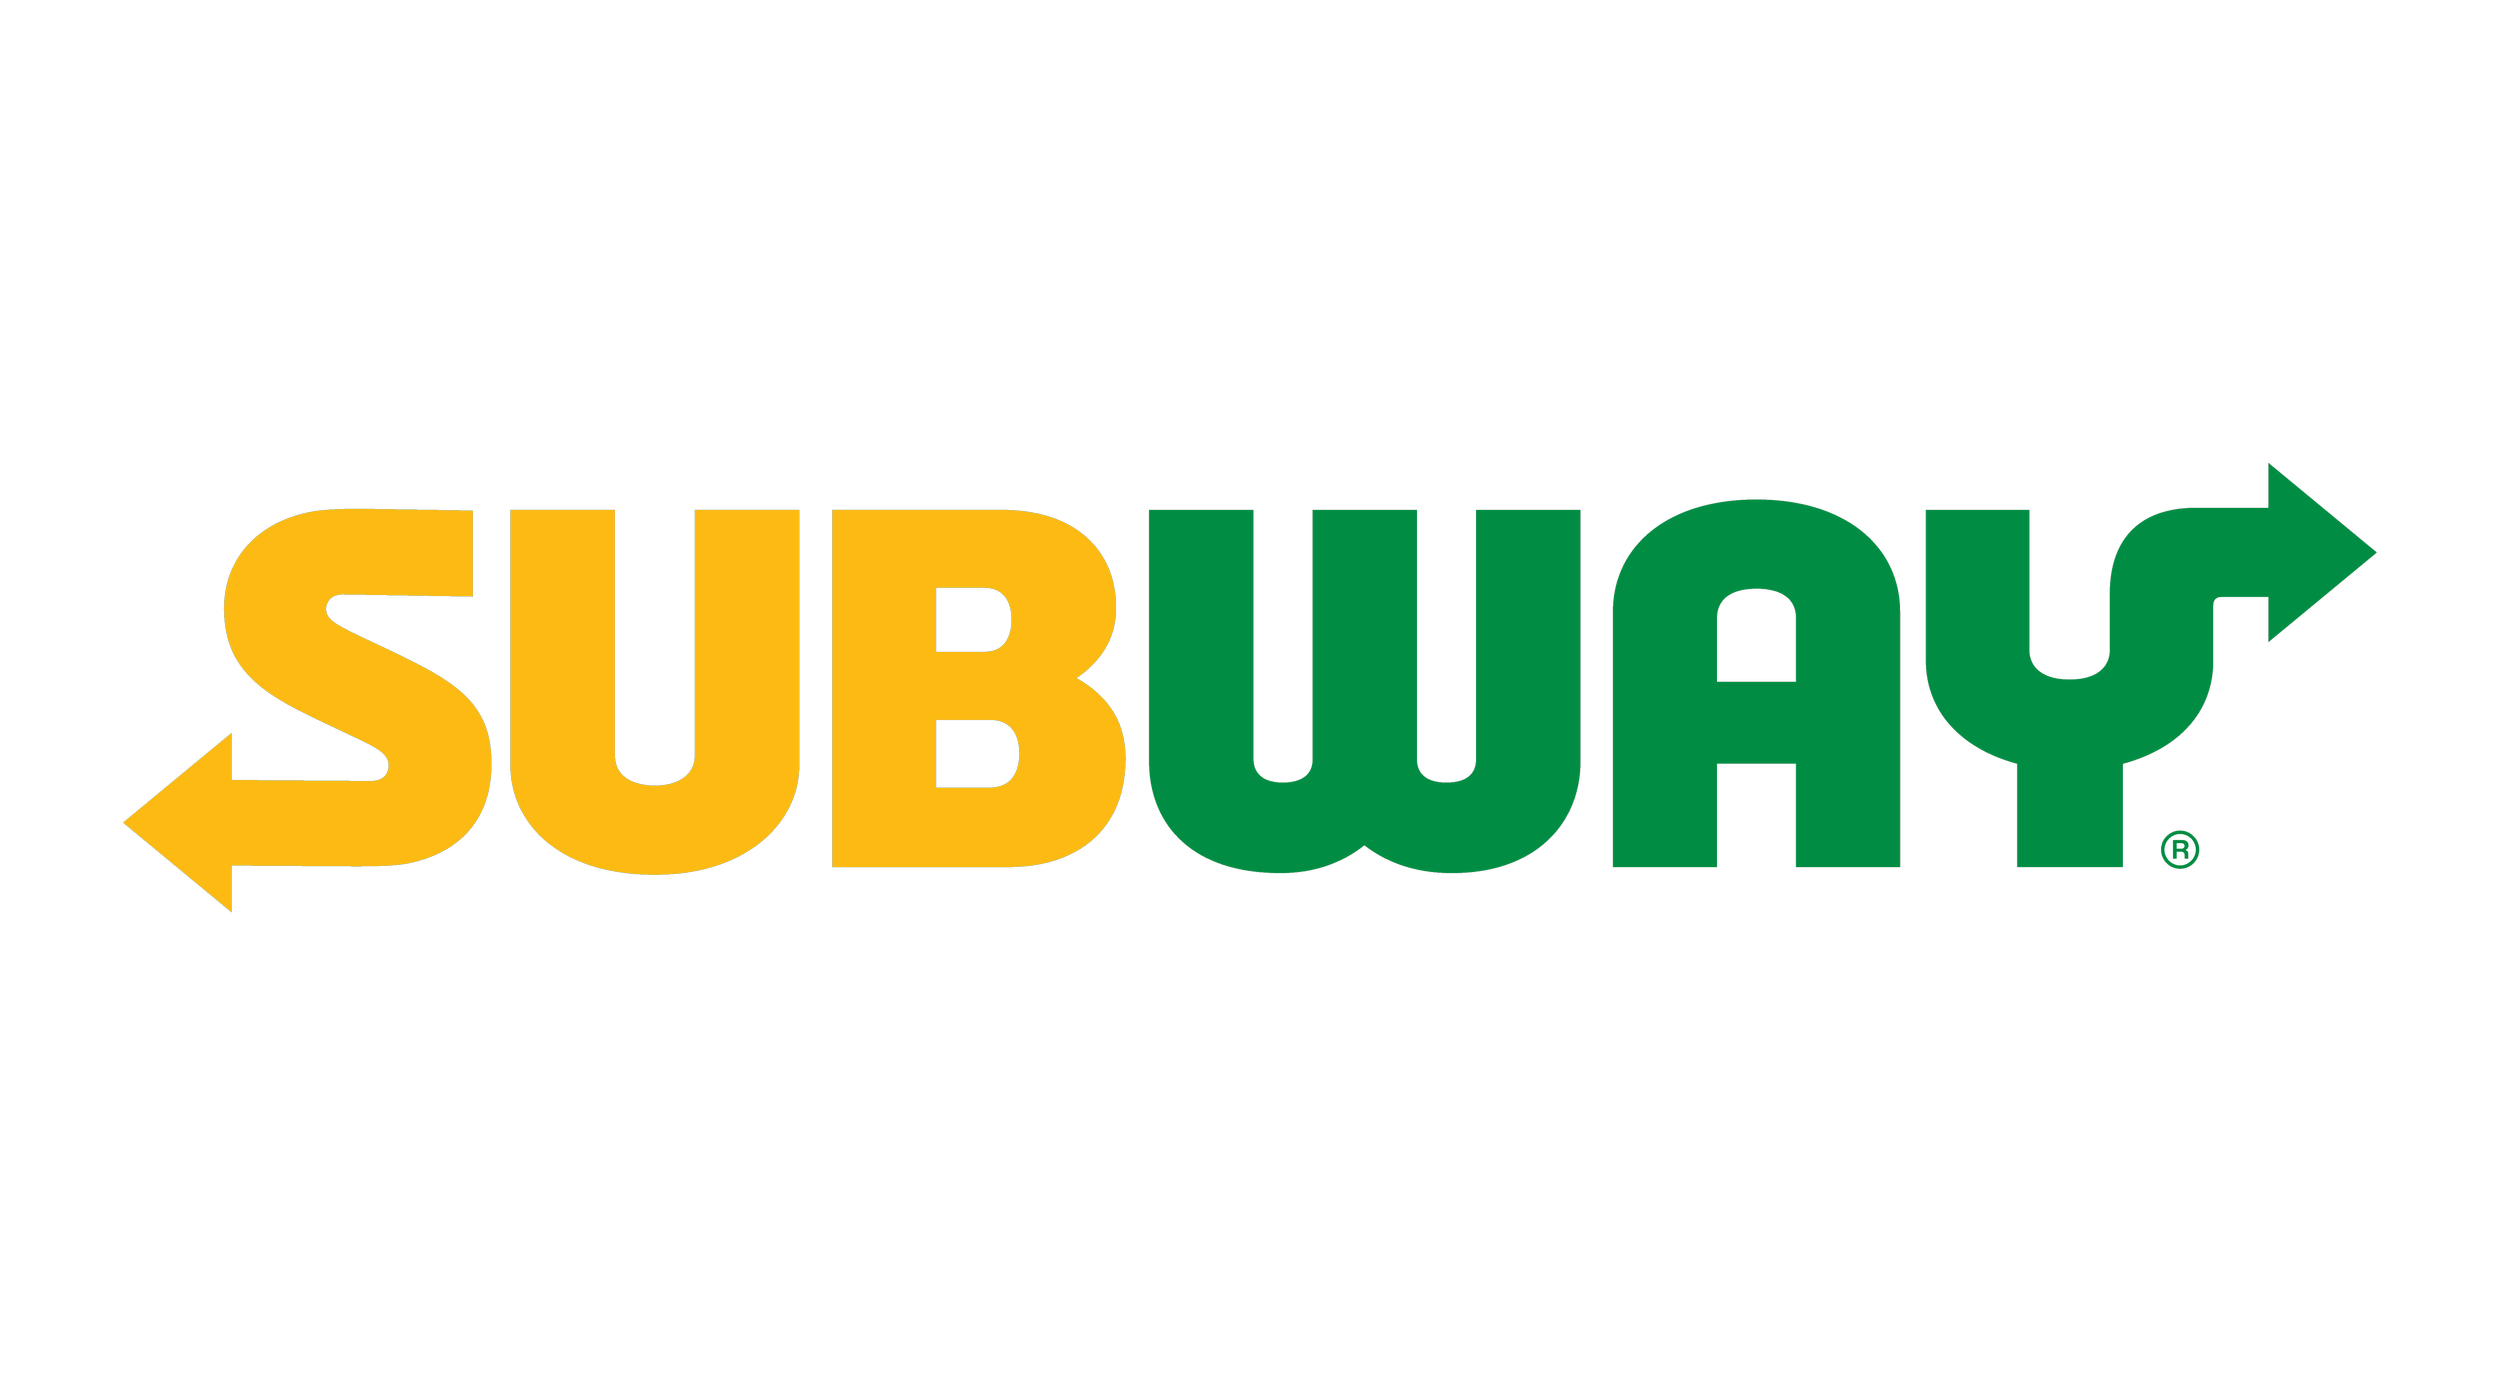 Subway-logo.png